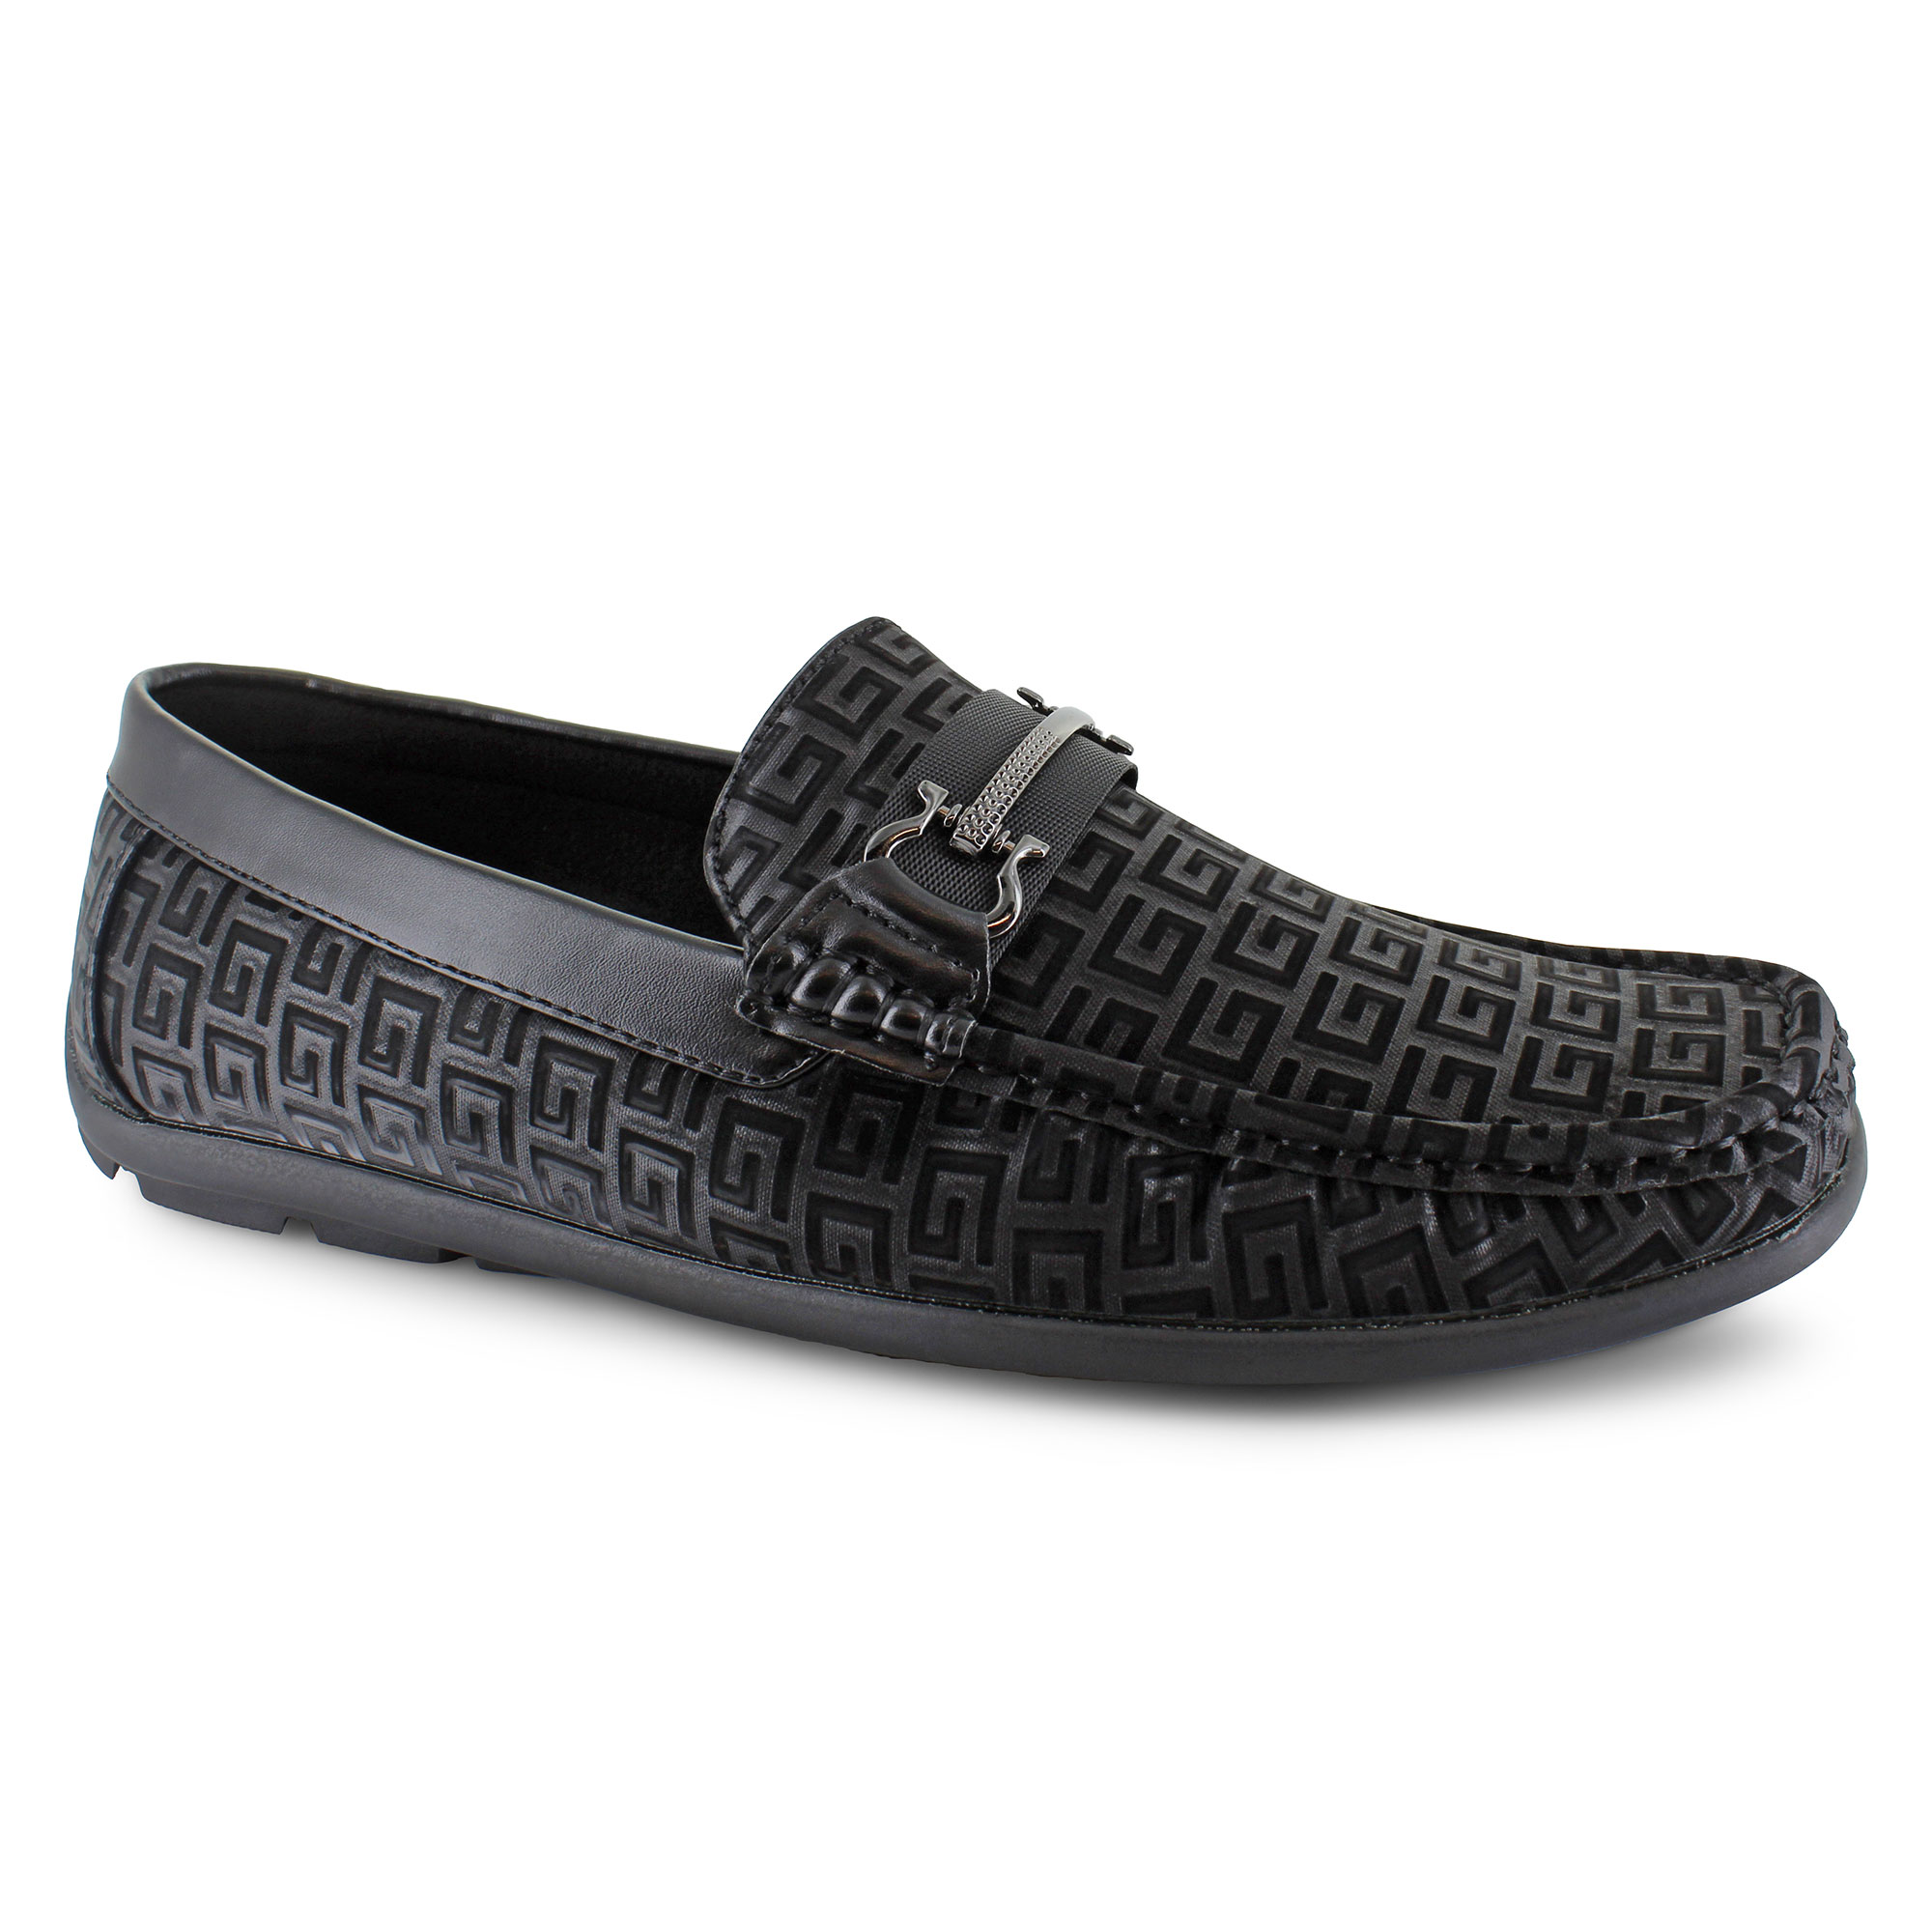 Men's Slip-On Casual Shoes | Shop Now at SHOE DEPT. ENCORE